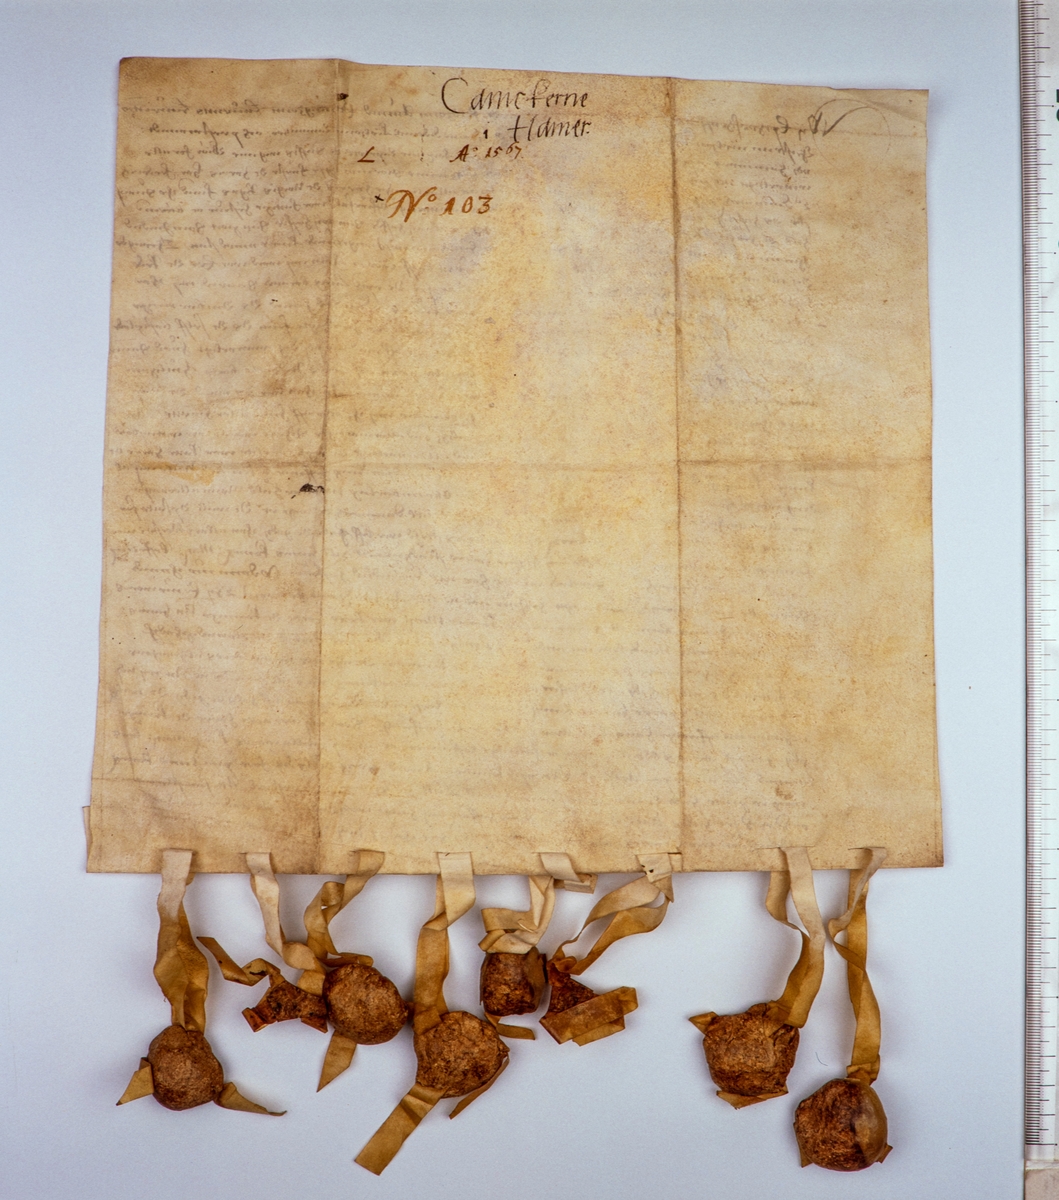 Baksiden av brev fra domkapitlet i Hamar datert 13. juni 1567. Brevet omhandler at domkapitlet ble fra tatt sine segl under syvårskrigen.  Brevet befinner seg i Rigsarkivet i København, Danmark.